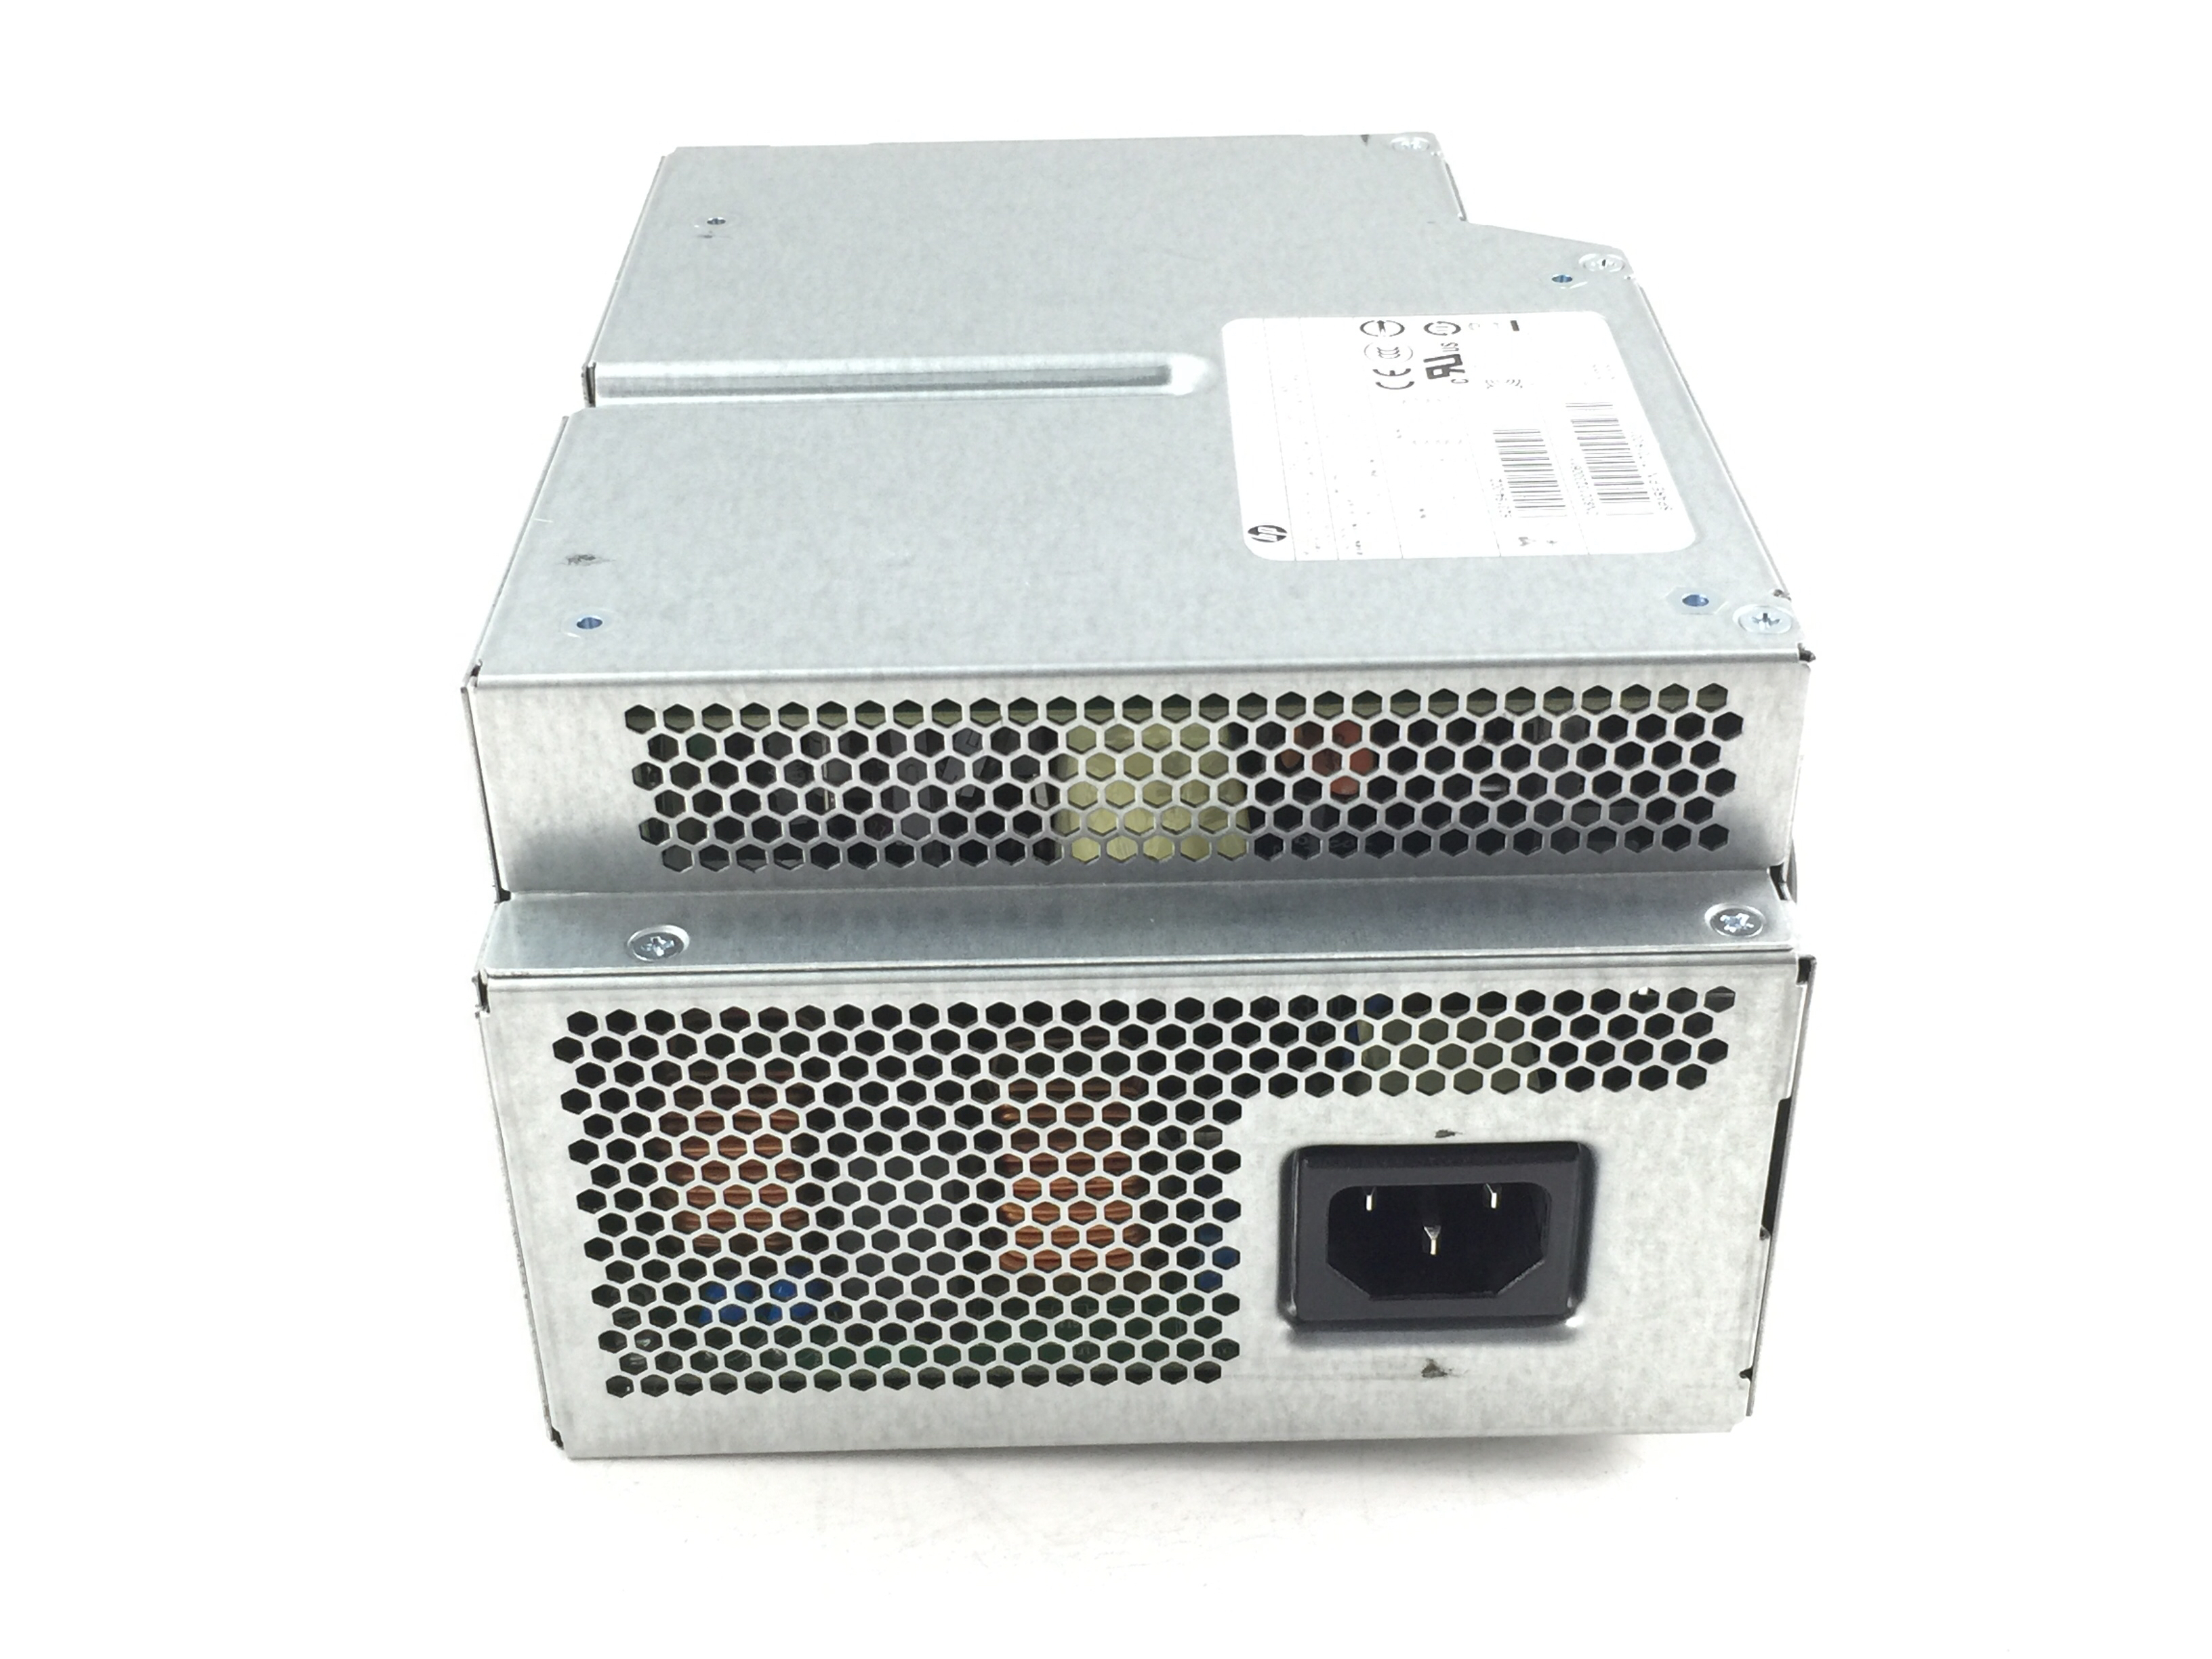 HP Z620 800W WorkStation Power Supply (717019-001)